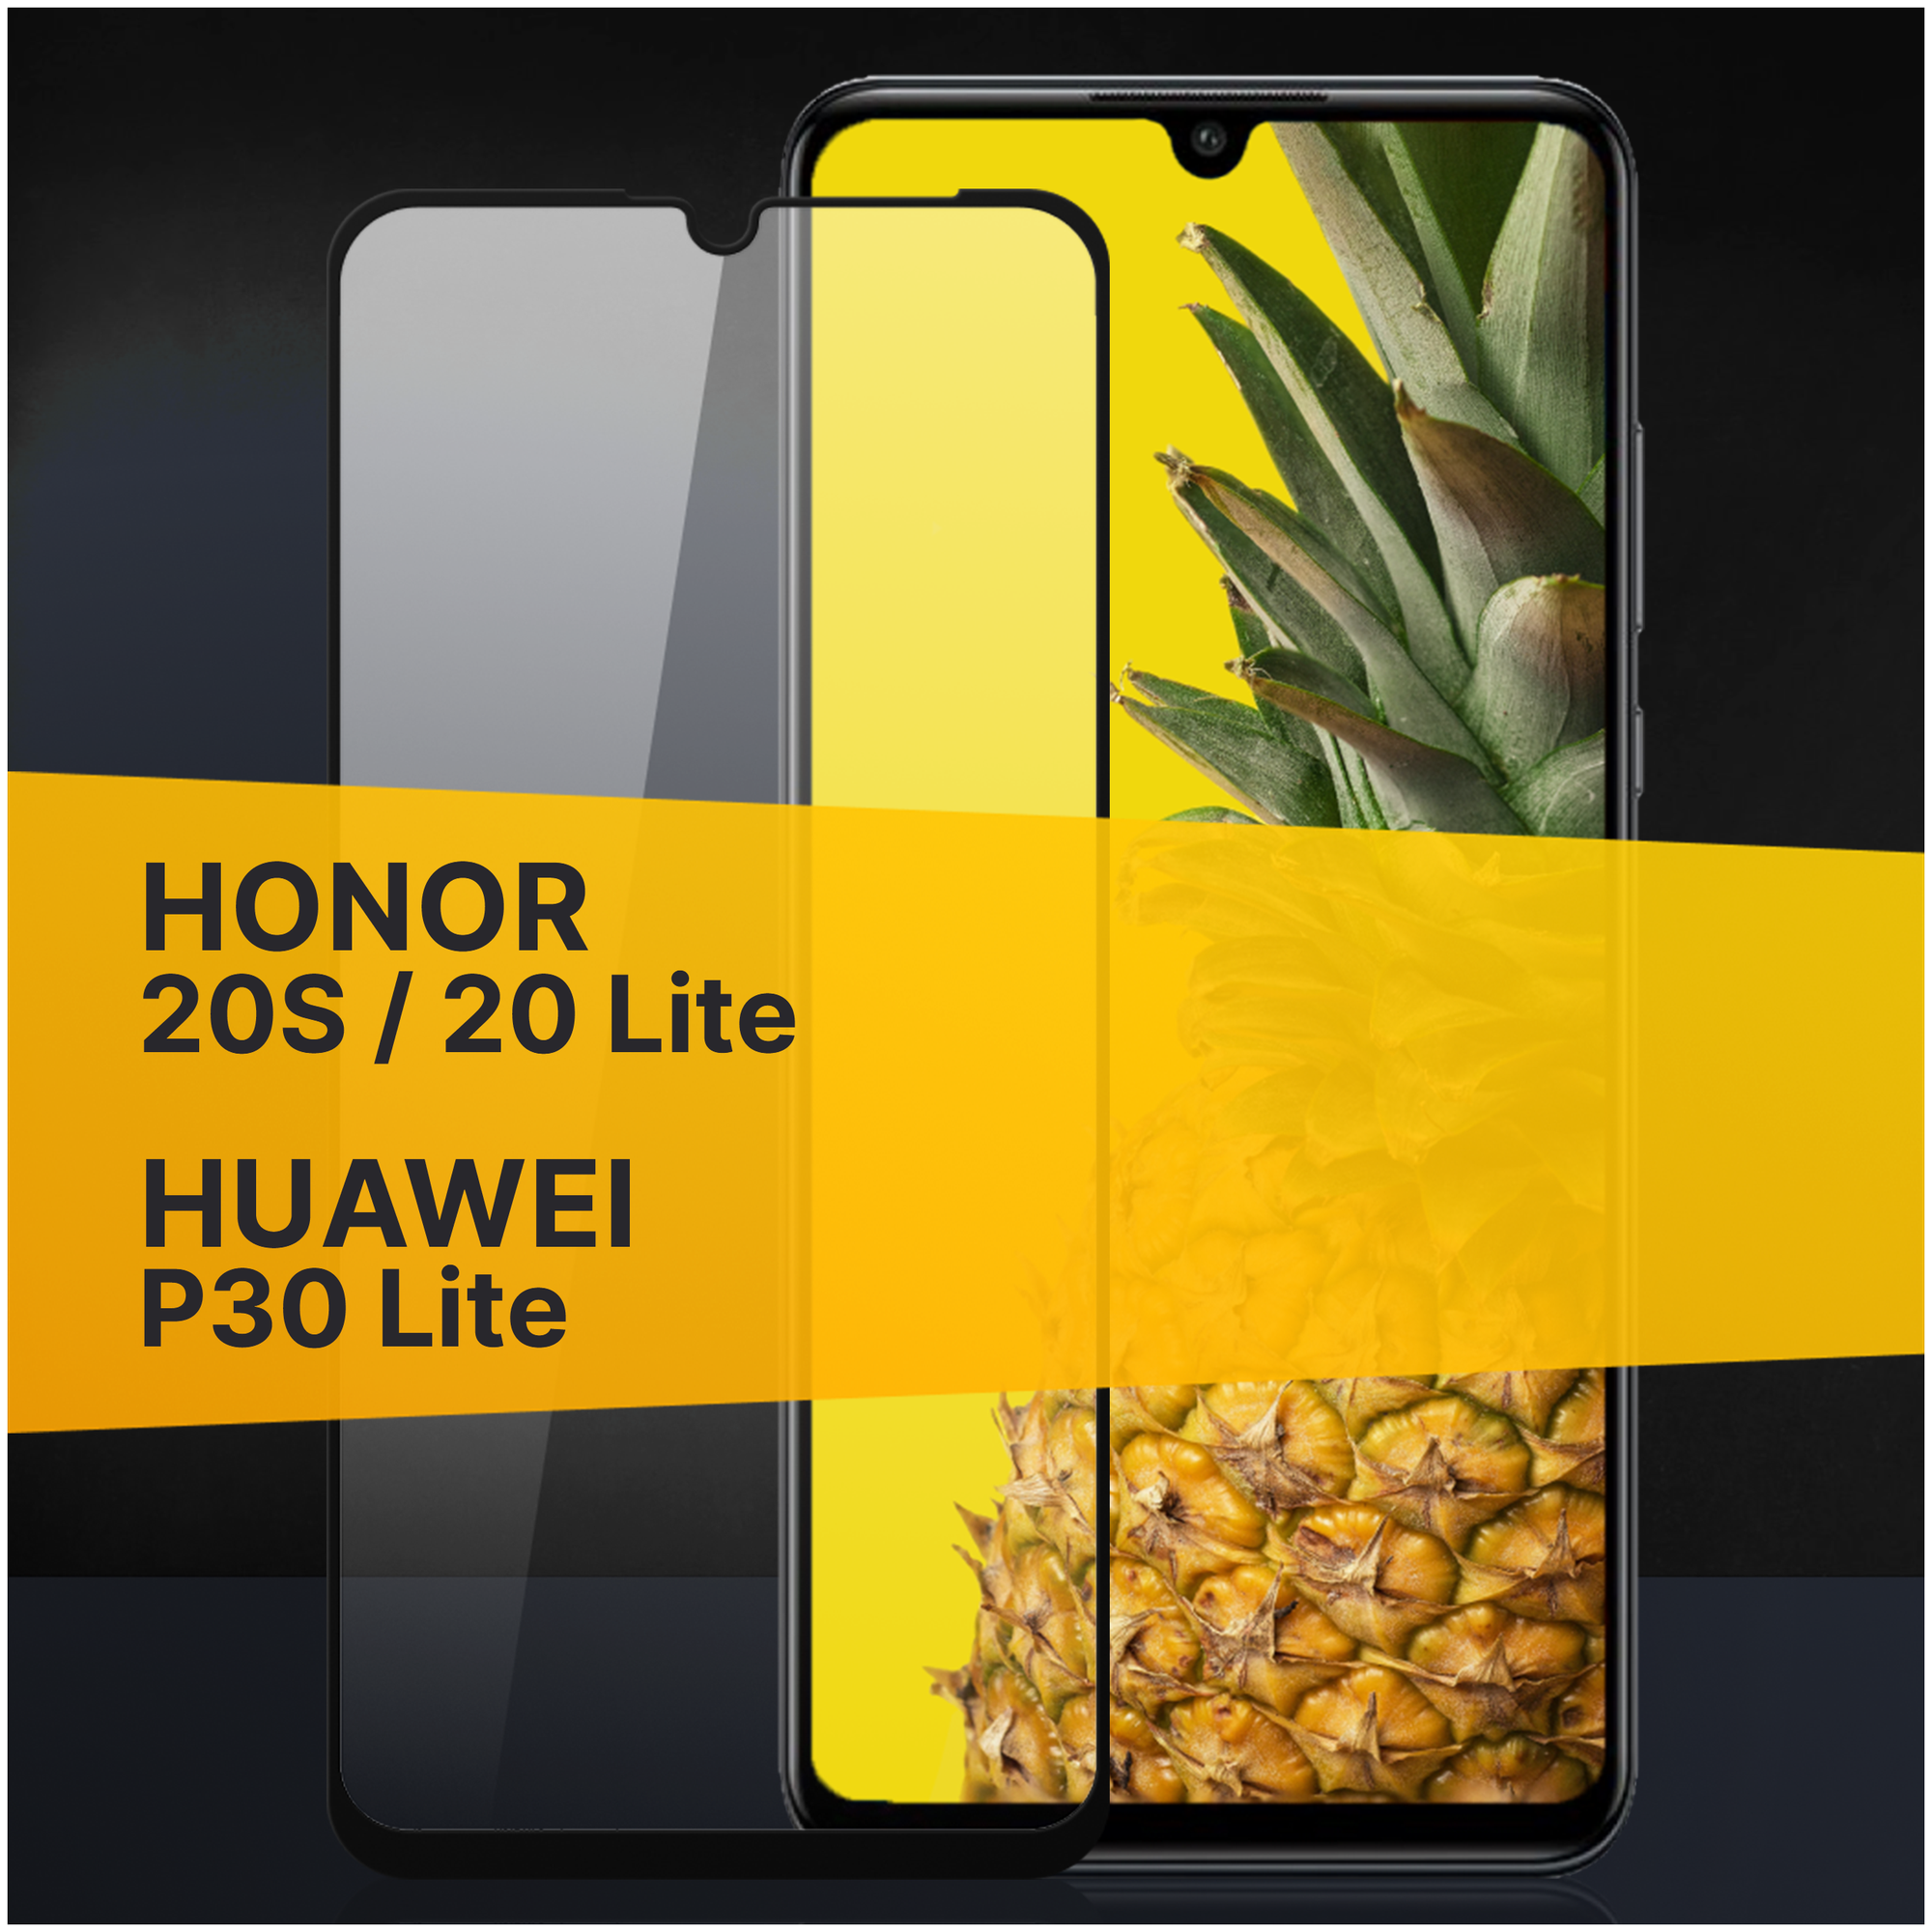 Противоударное защитное стекло для телефона Huawei P30 Lite, Honor 20S, 20 Lite / Полноклеевое 3D стекло с олеофобным покрытием на смартфон Хуавей П30 Лайт, Хонор 20С, 20 Лайт / С черной рамкой